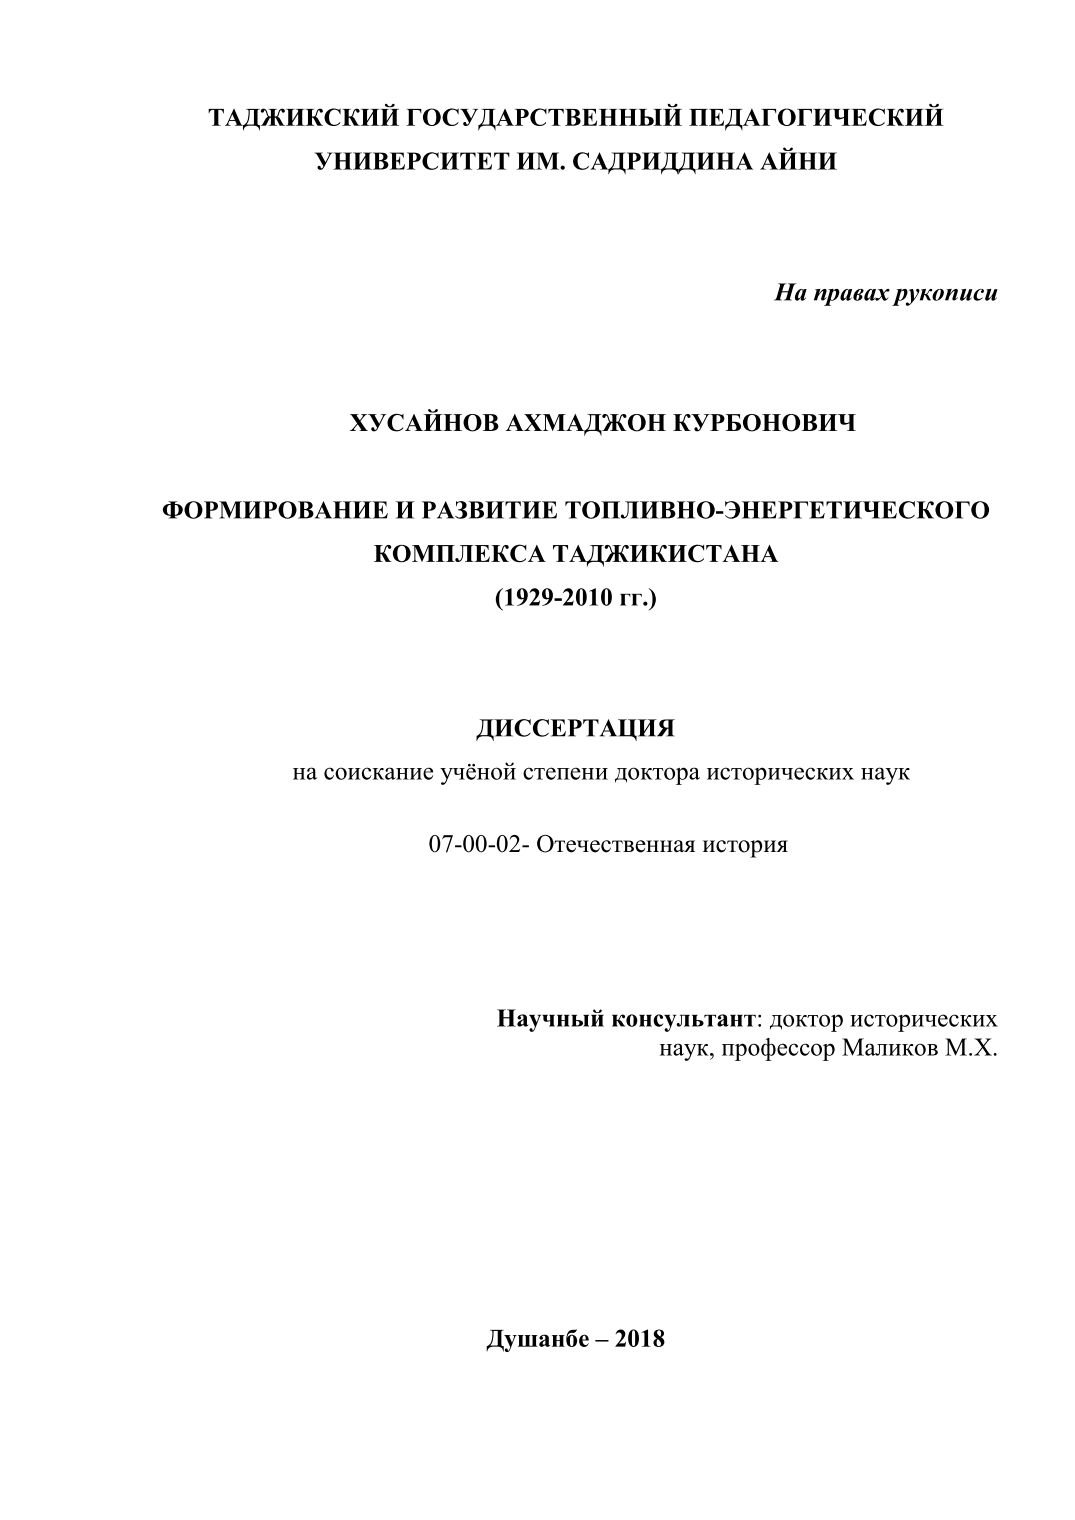 Формирование и развитие топливно-энергетического комплекса Таджикистана (1929-2010 гг.)